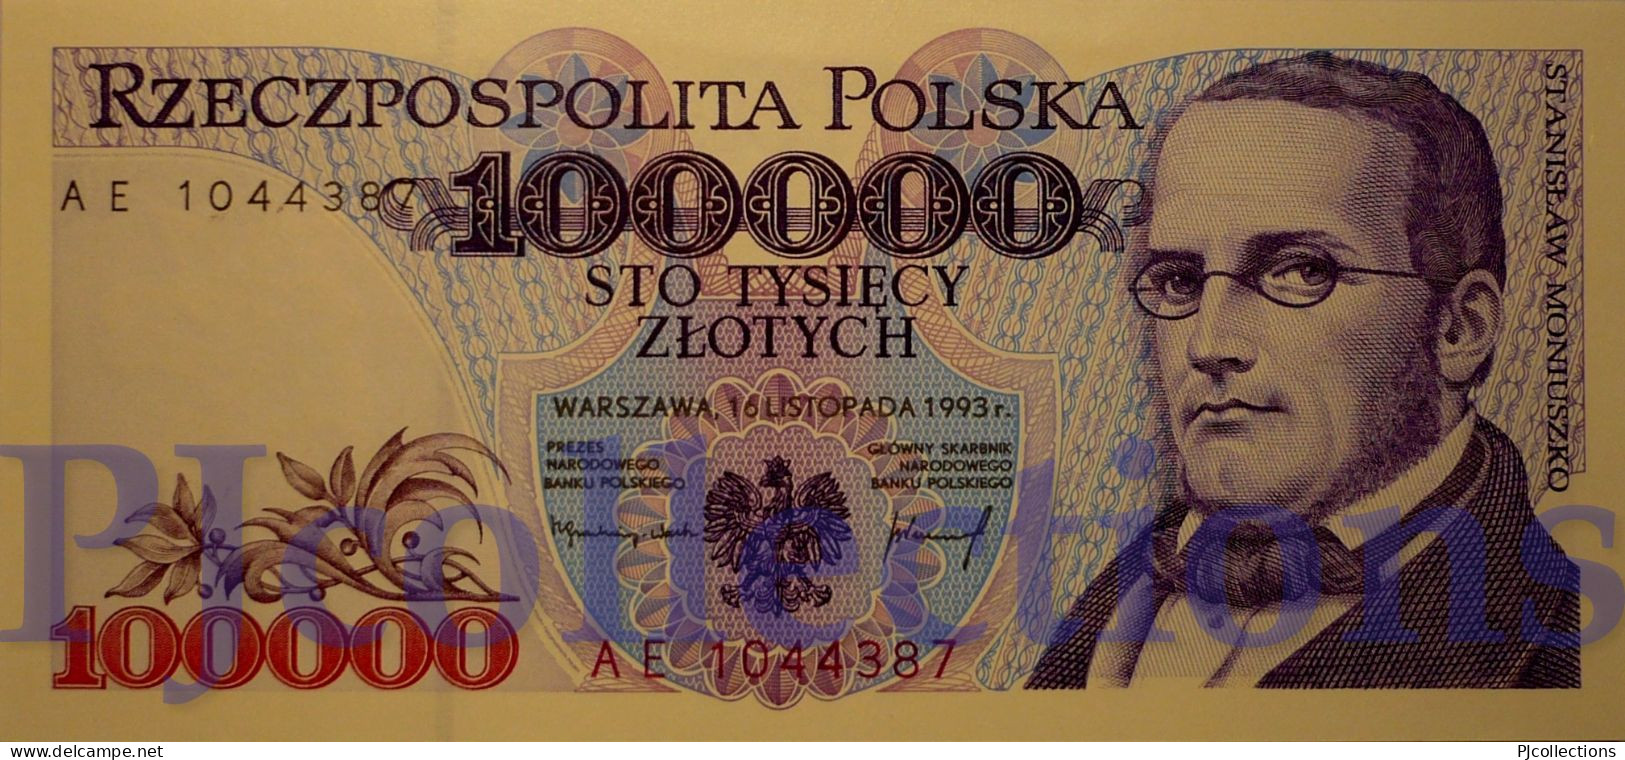 POLONIA - POLAND 100000 ZLOTYCH 1993 PICK 160a UNC PREFIX "AE" - Polonia